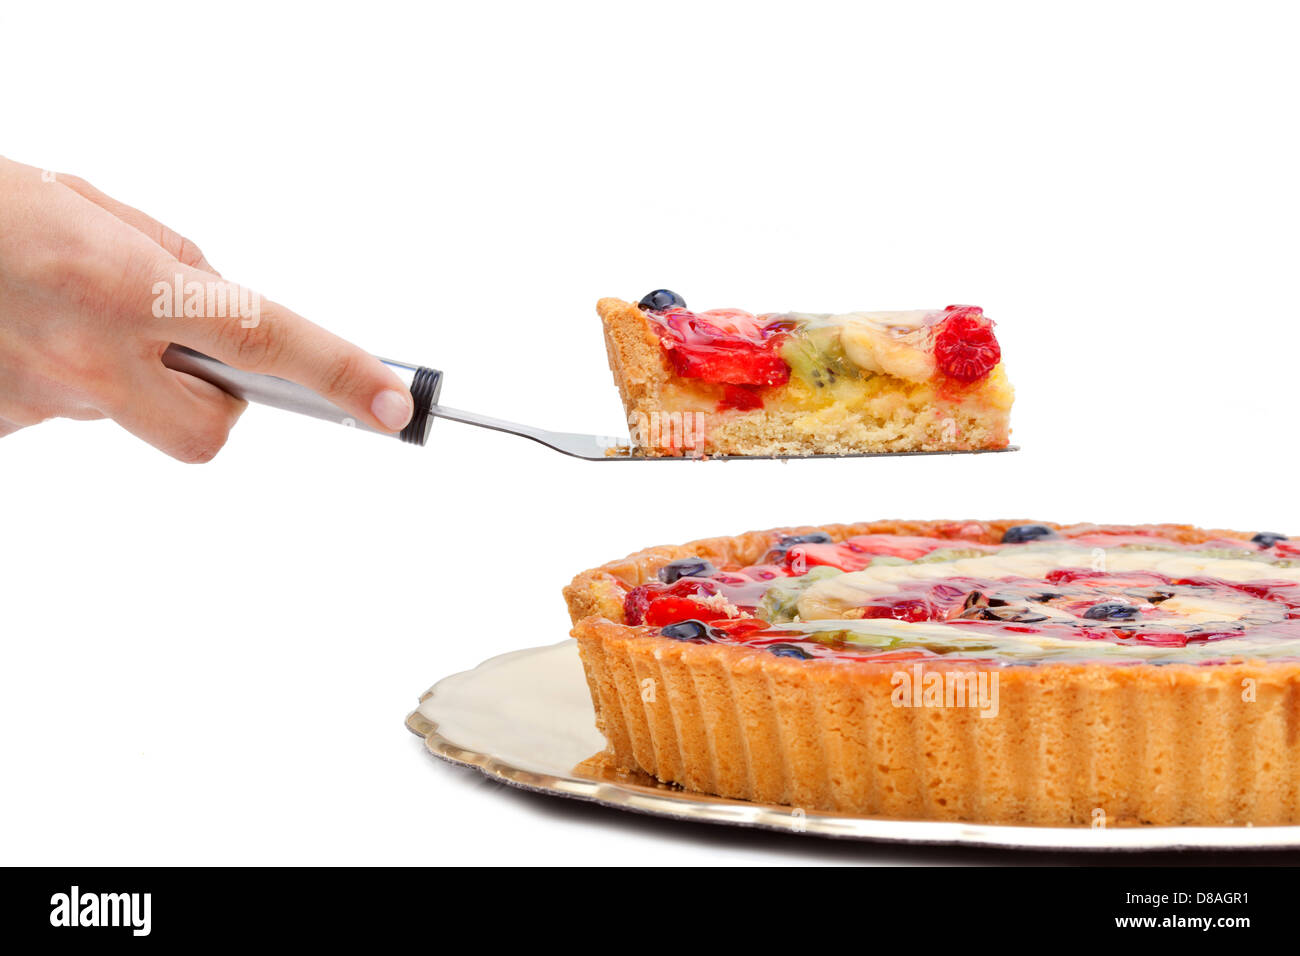 Slice of fruit cake on white background Stock Photo